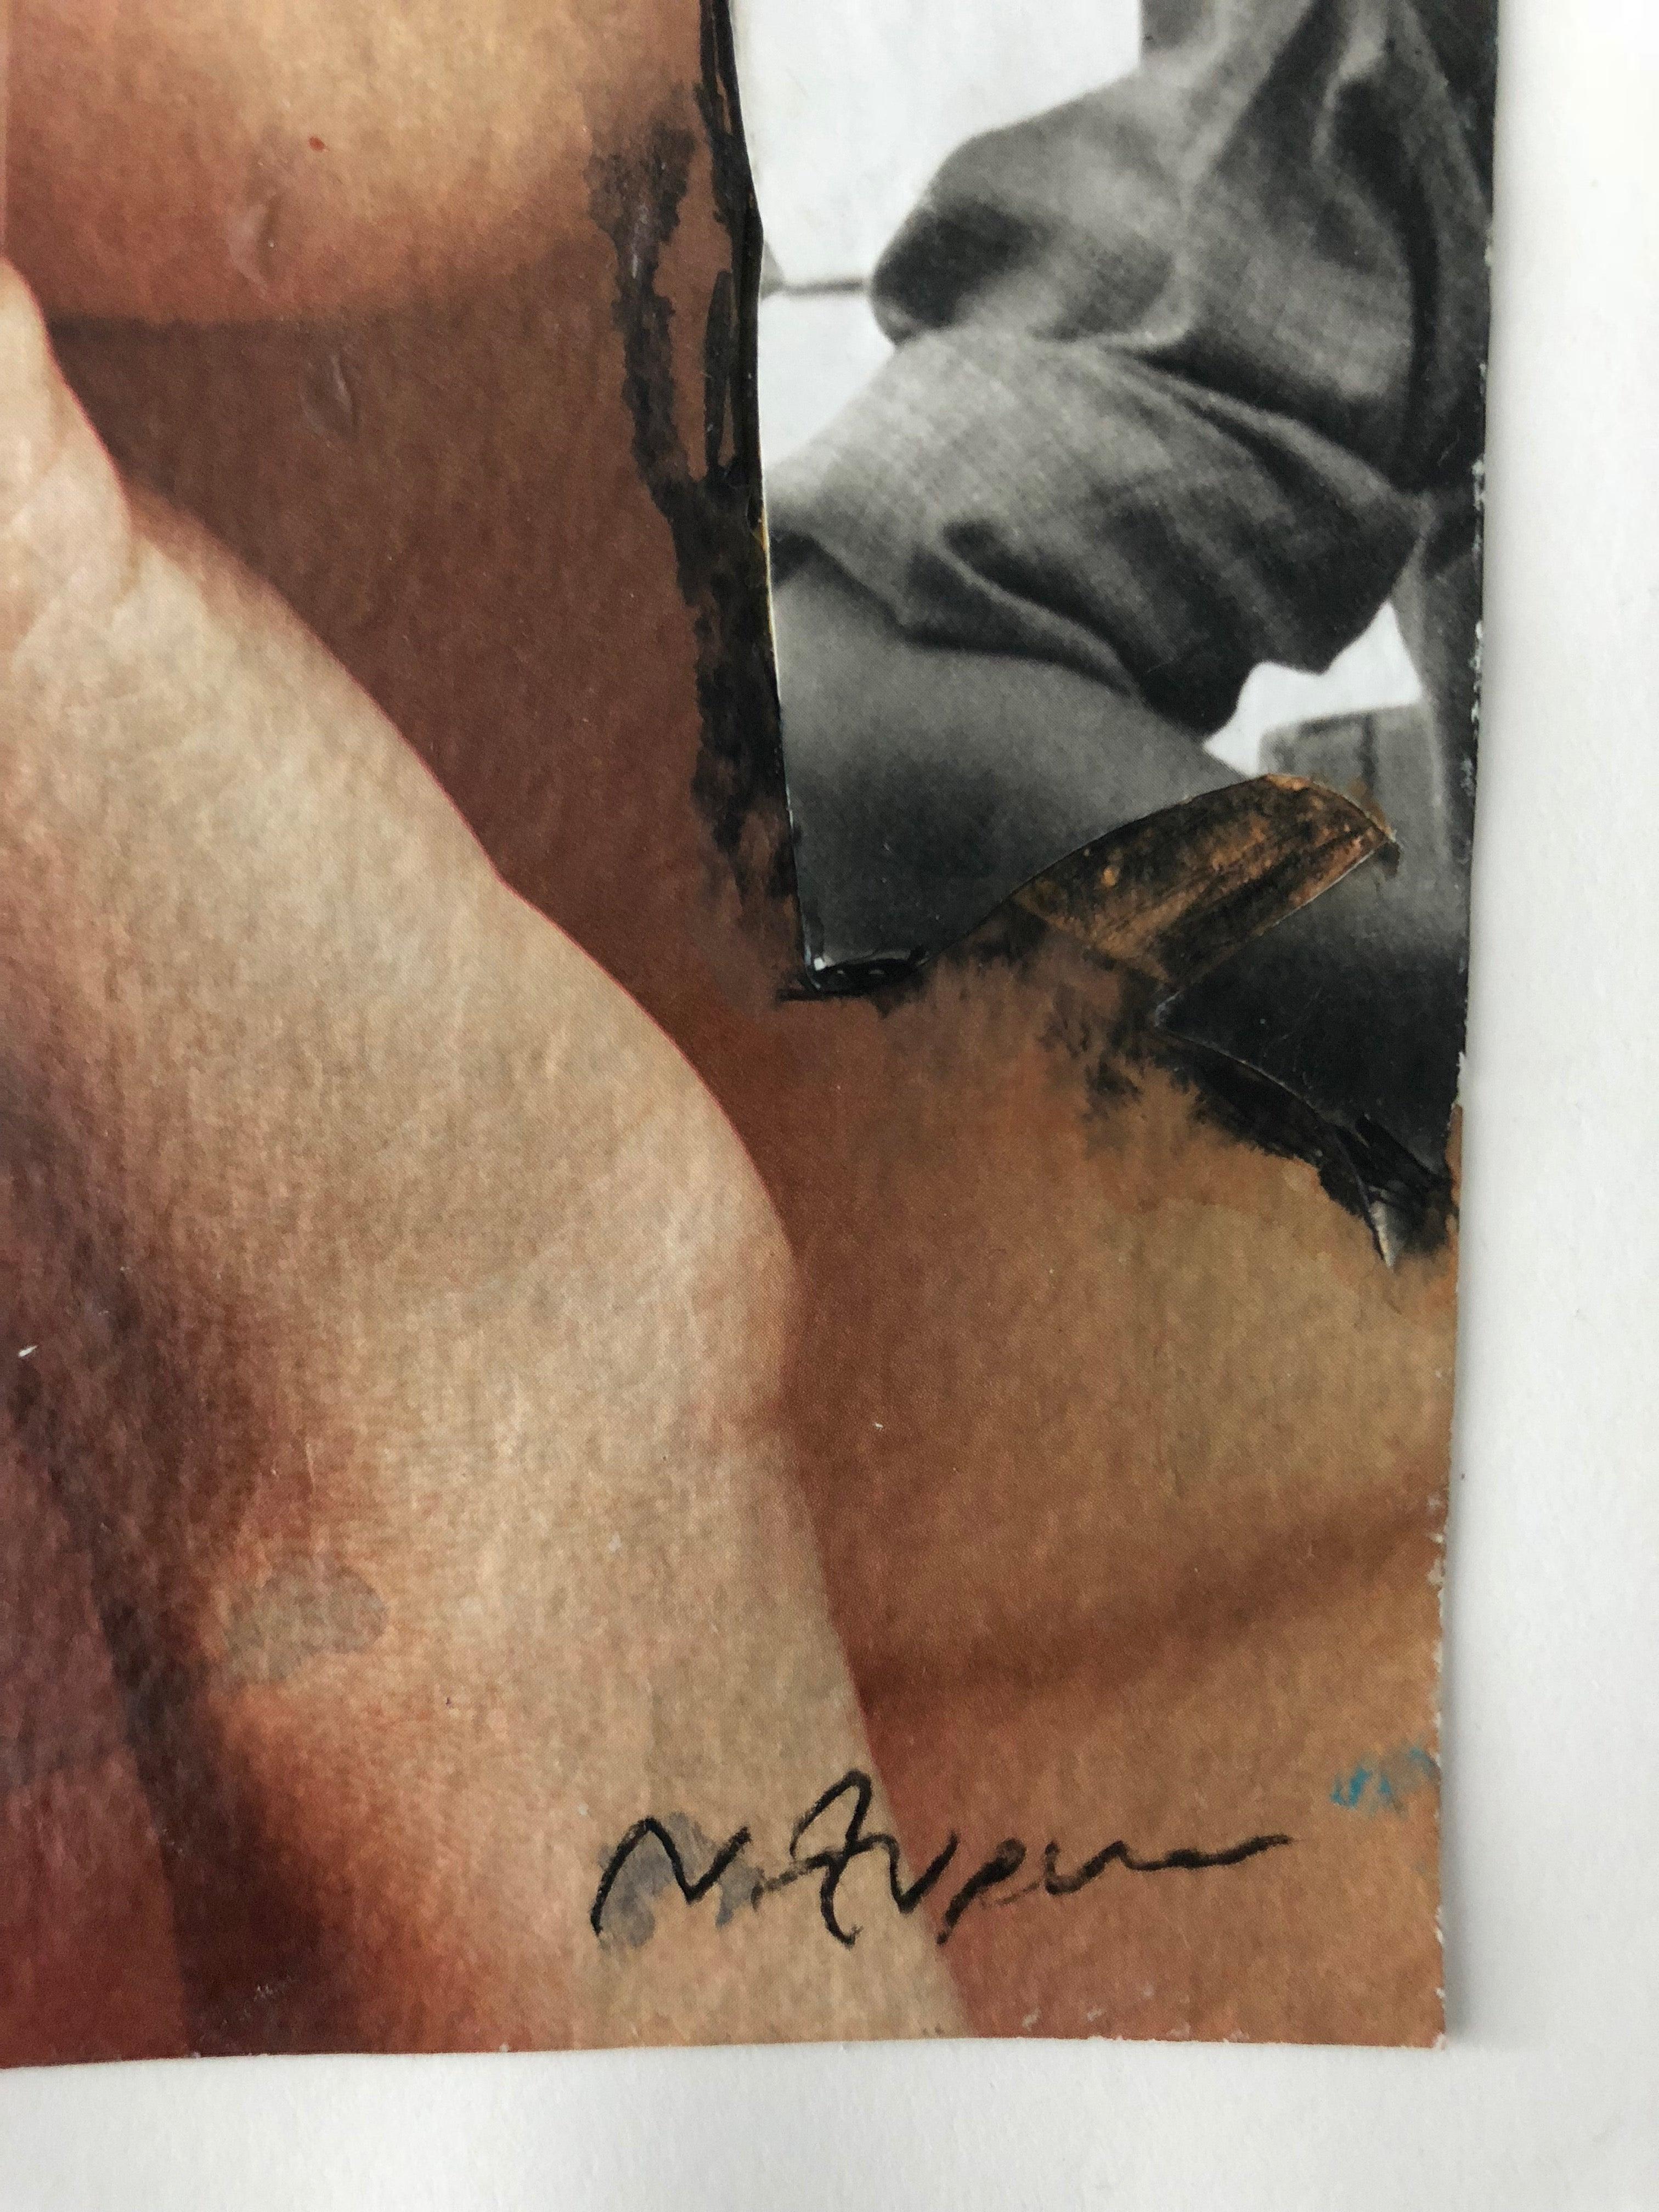 Cocteau-Ringe, #2271 von Natasha Zupan
Collage auf Papier
Maße: 12,2 in. H x 9.1 in. W
Einzigartig
Signiert unten rechts auf der Vorderseite vom Künstler
2018

Natasha Zupans Werk 